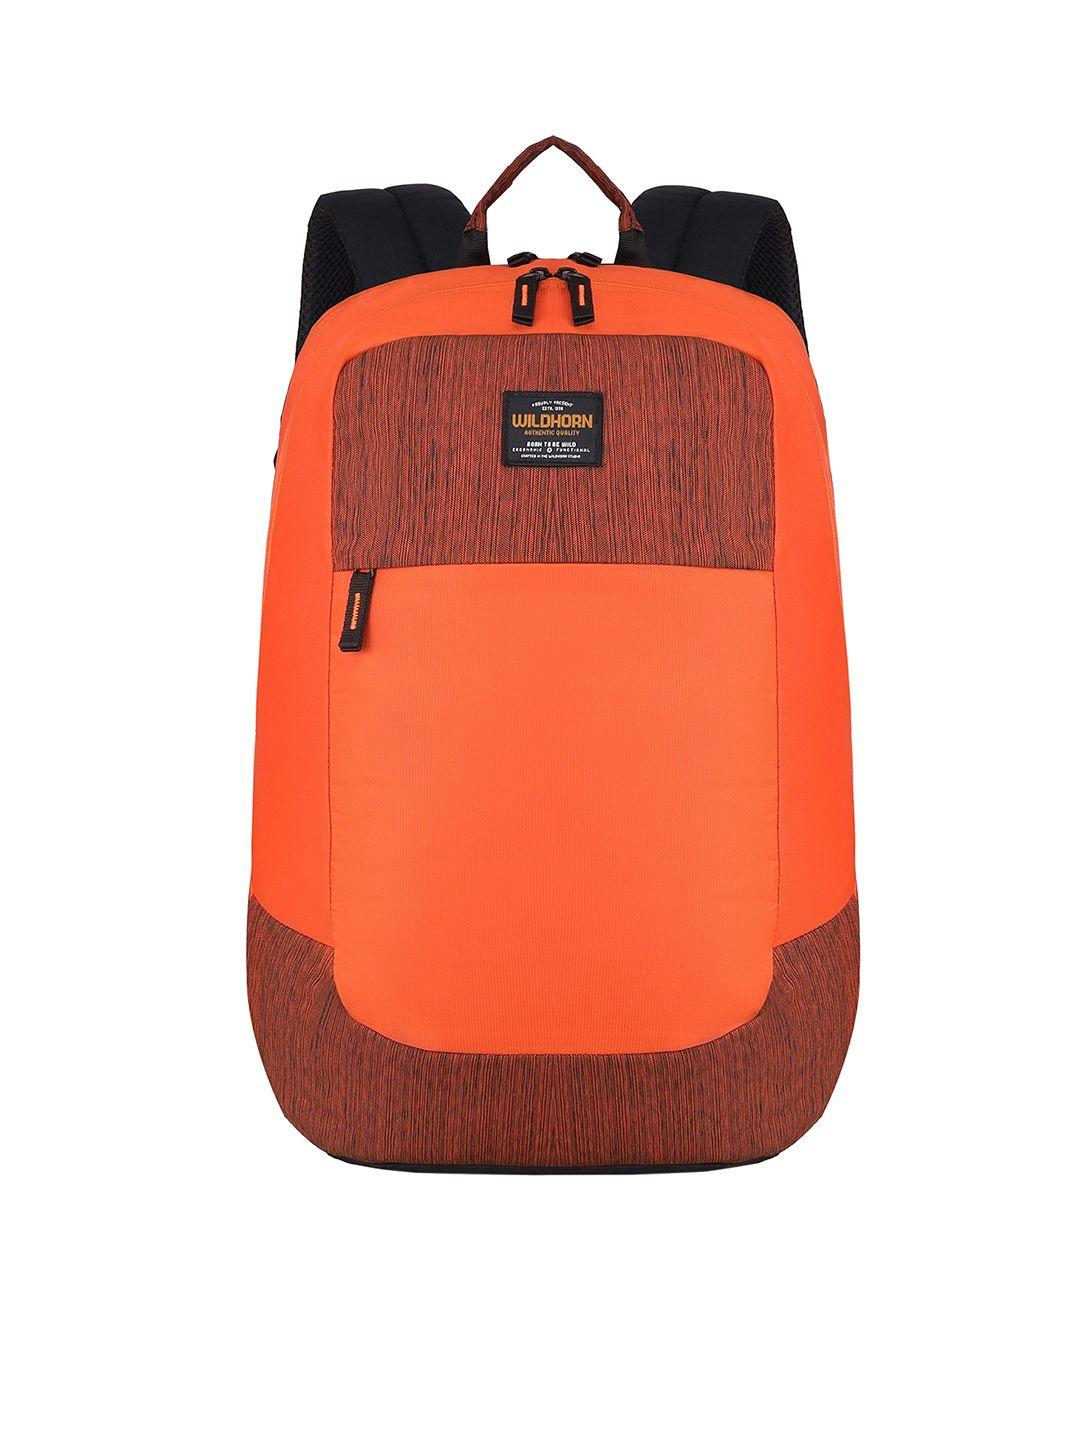 wildhorn unisex orange & black backpack with compression straps